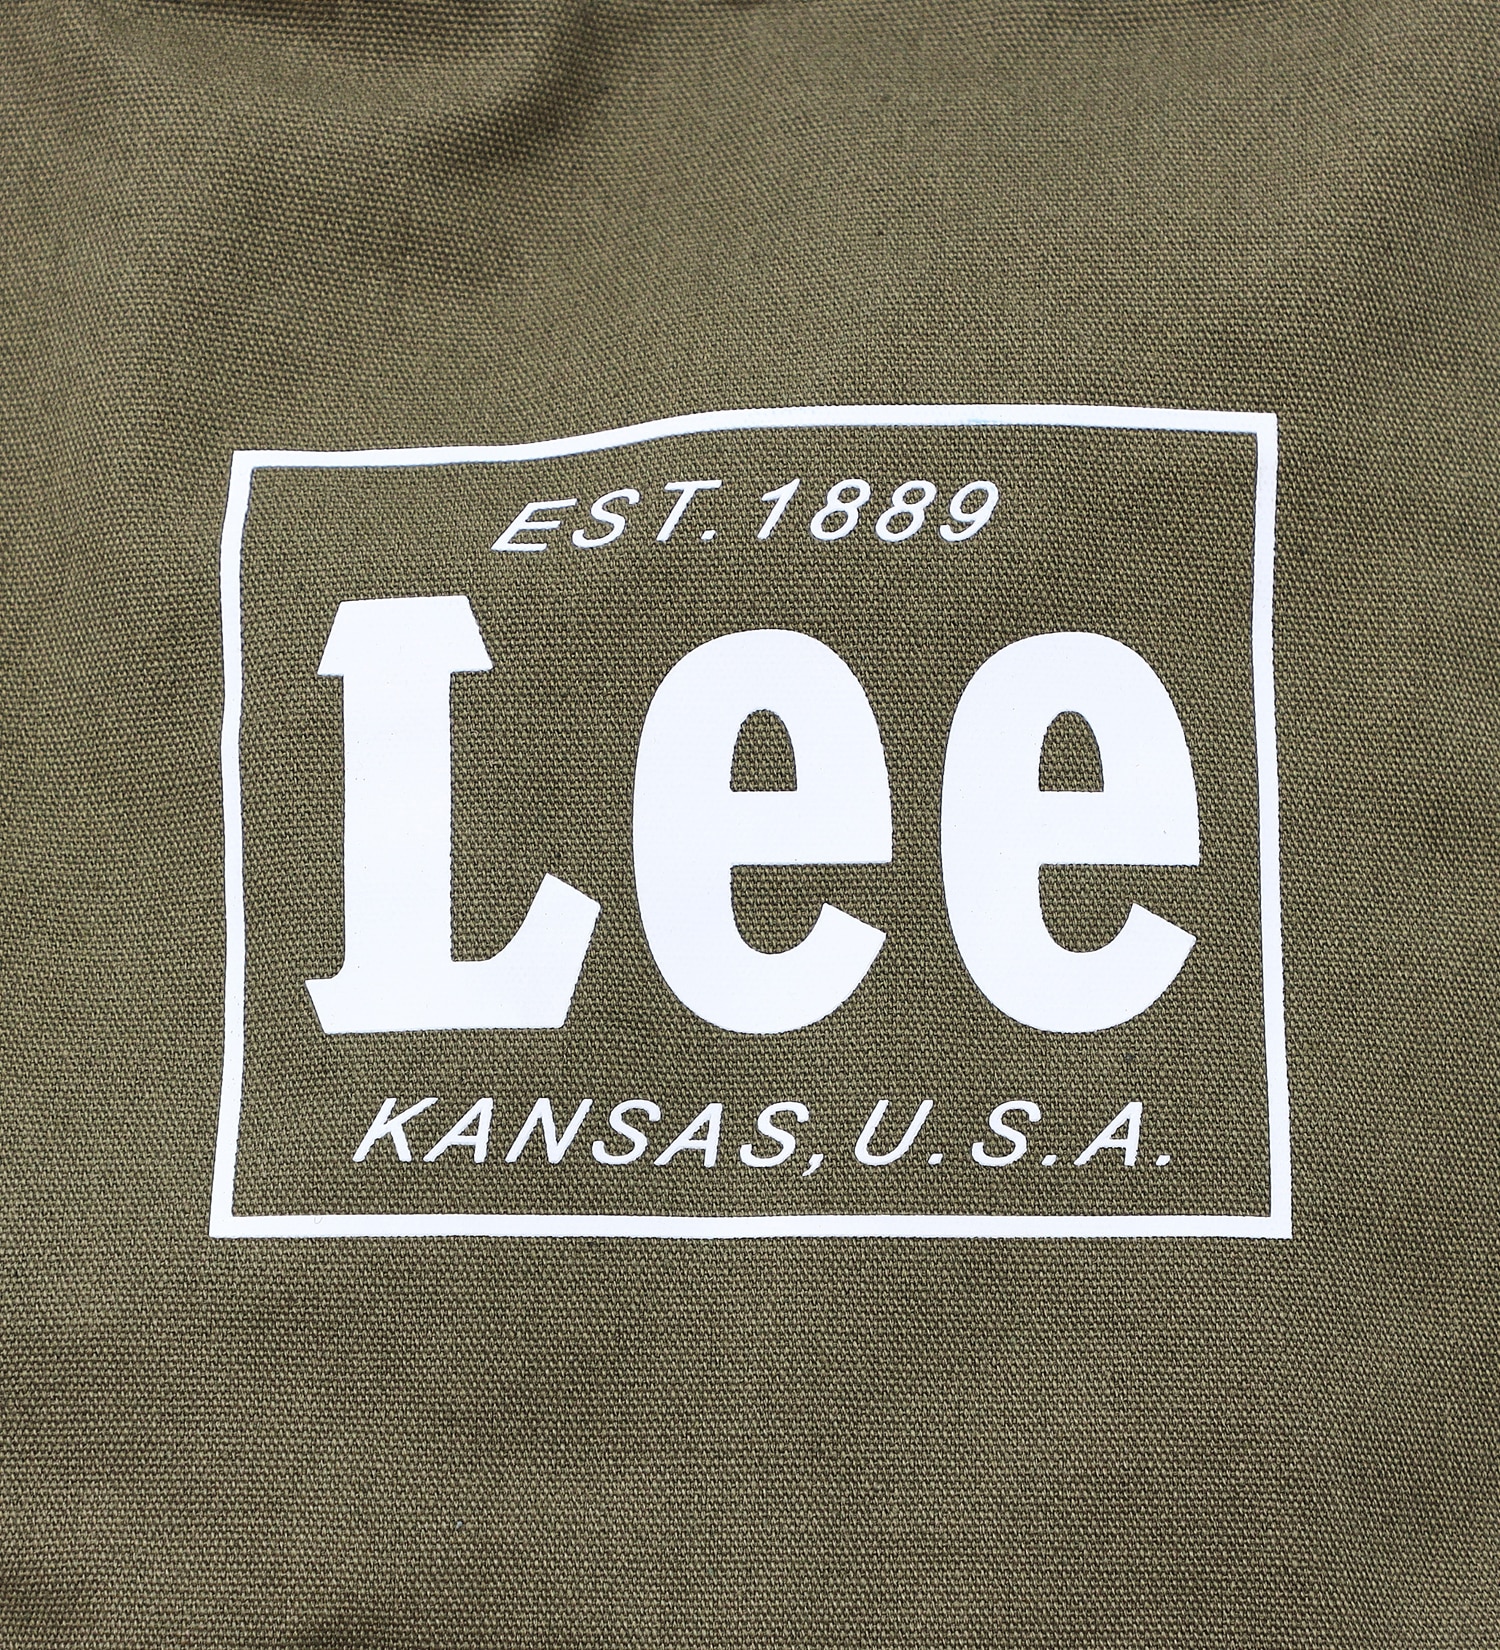 Lee(リー)のLee 2wayトートバッグ|バッグ/トートバッグ/メンズ|カーキ